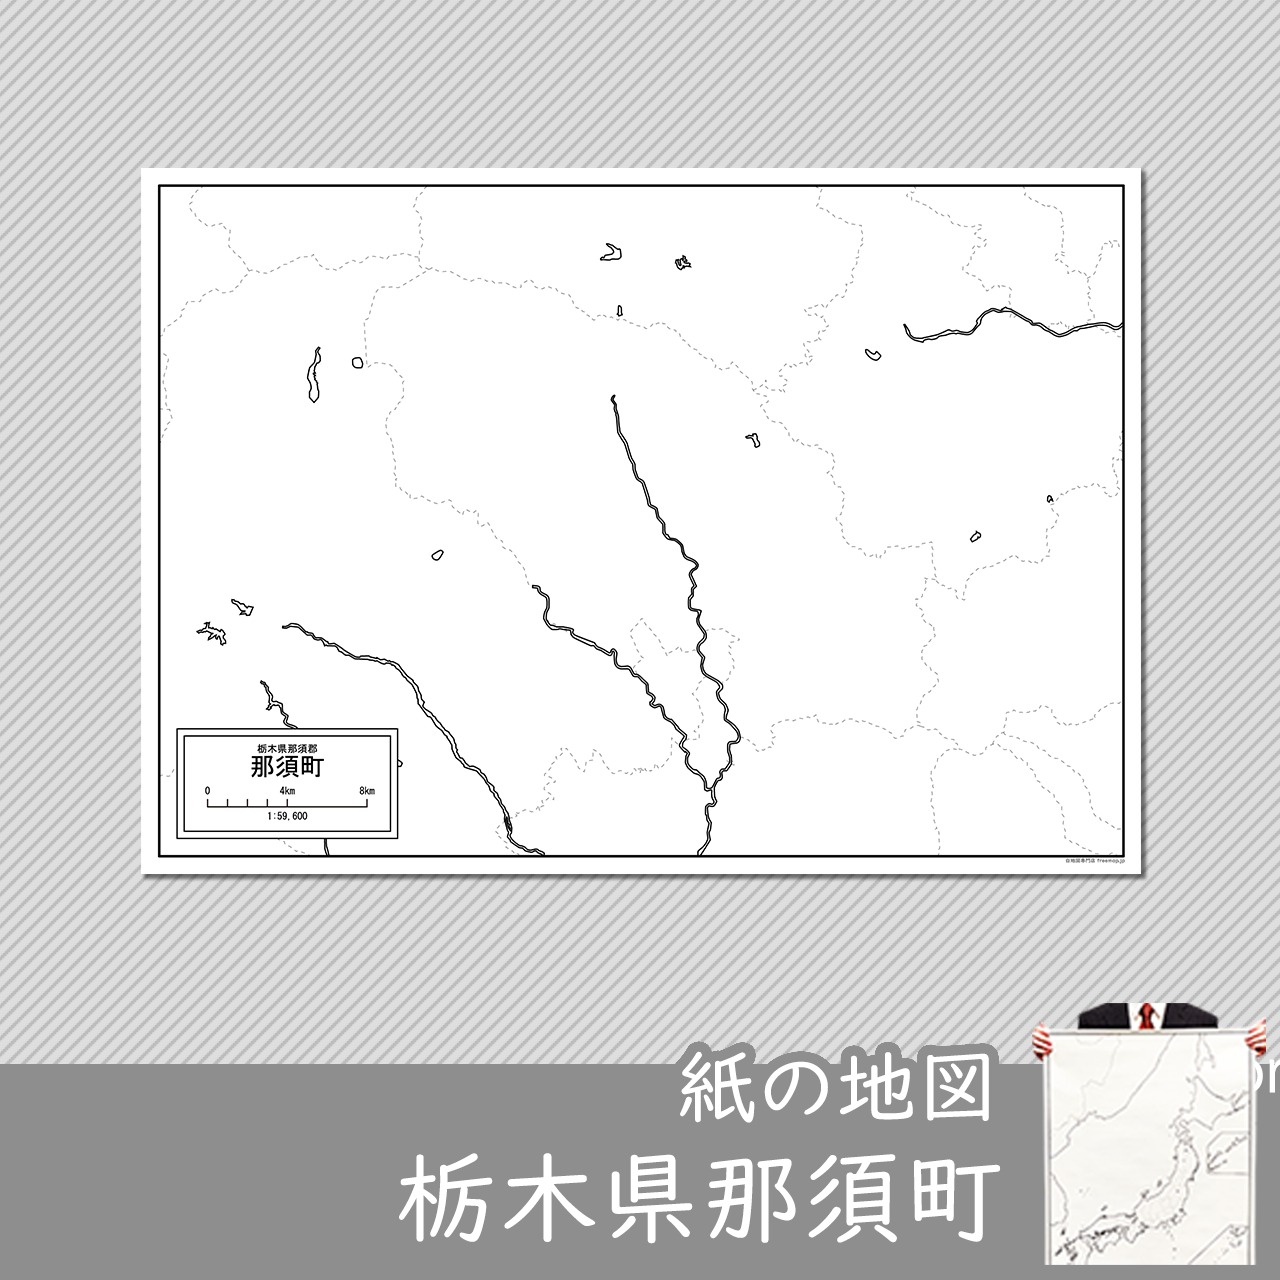 那須町の紙の白地図のサムネイル